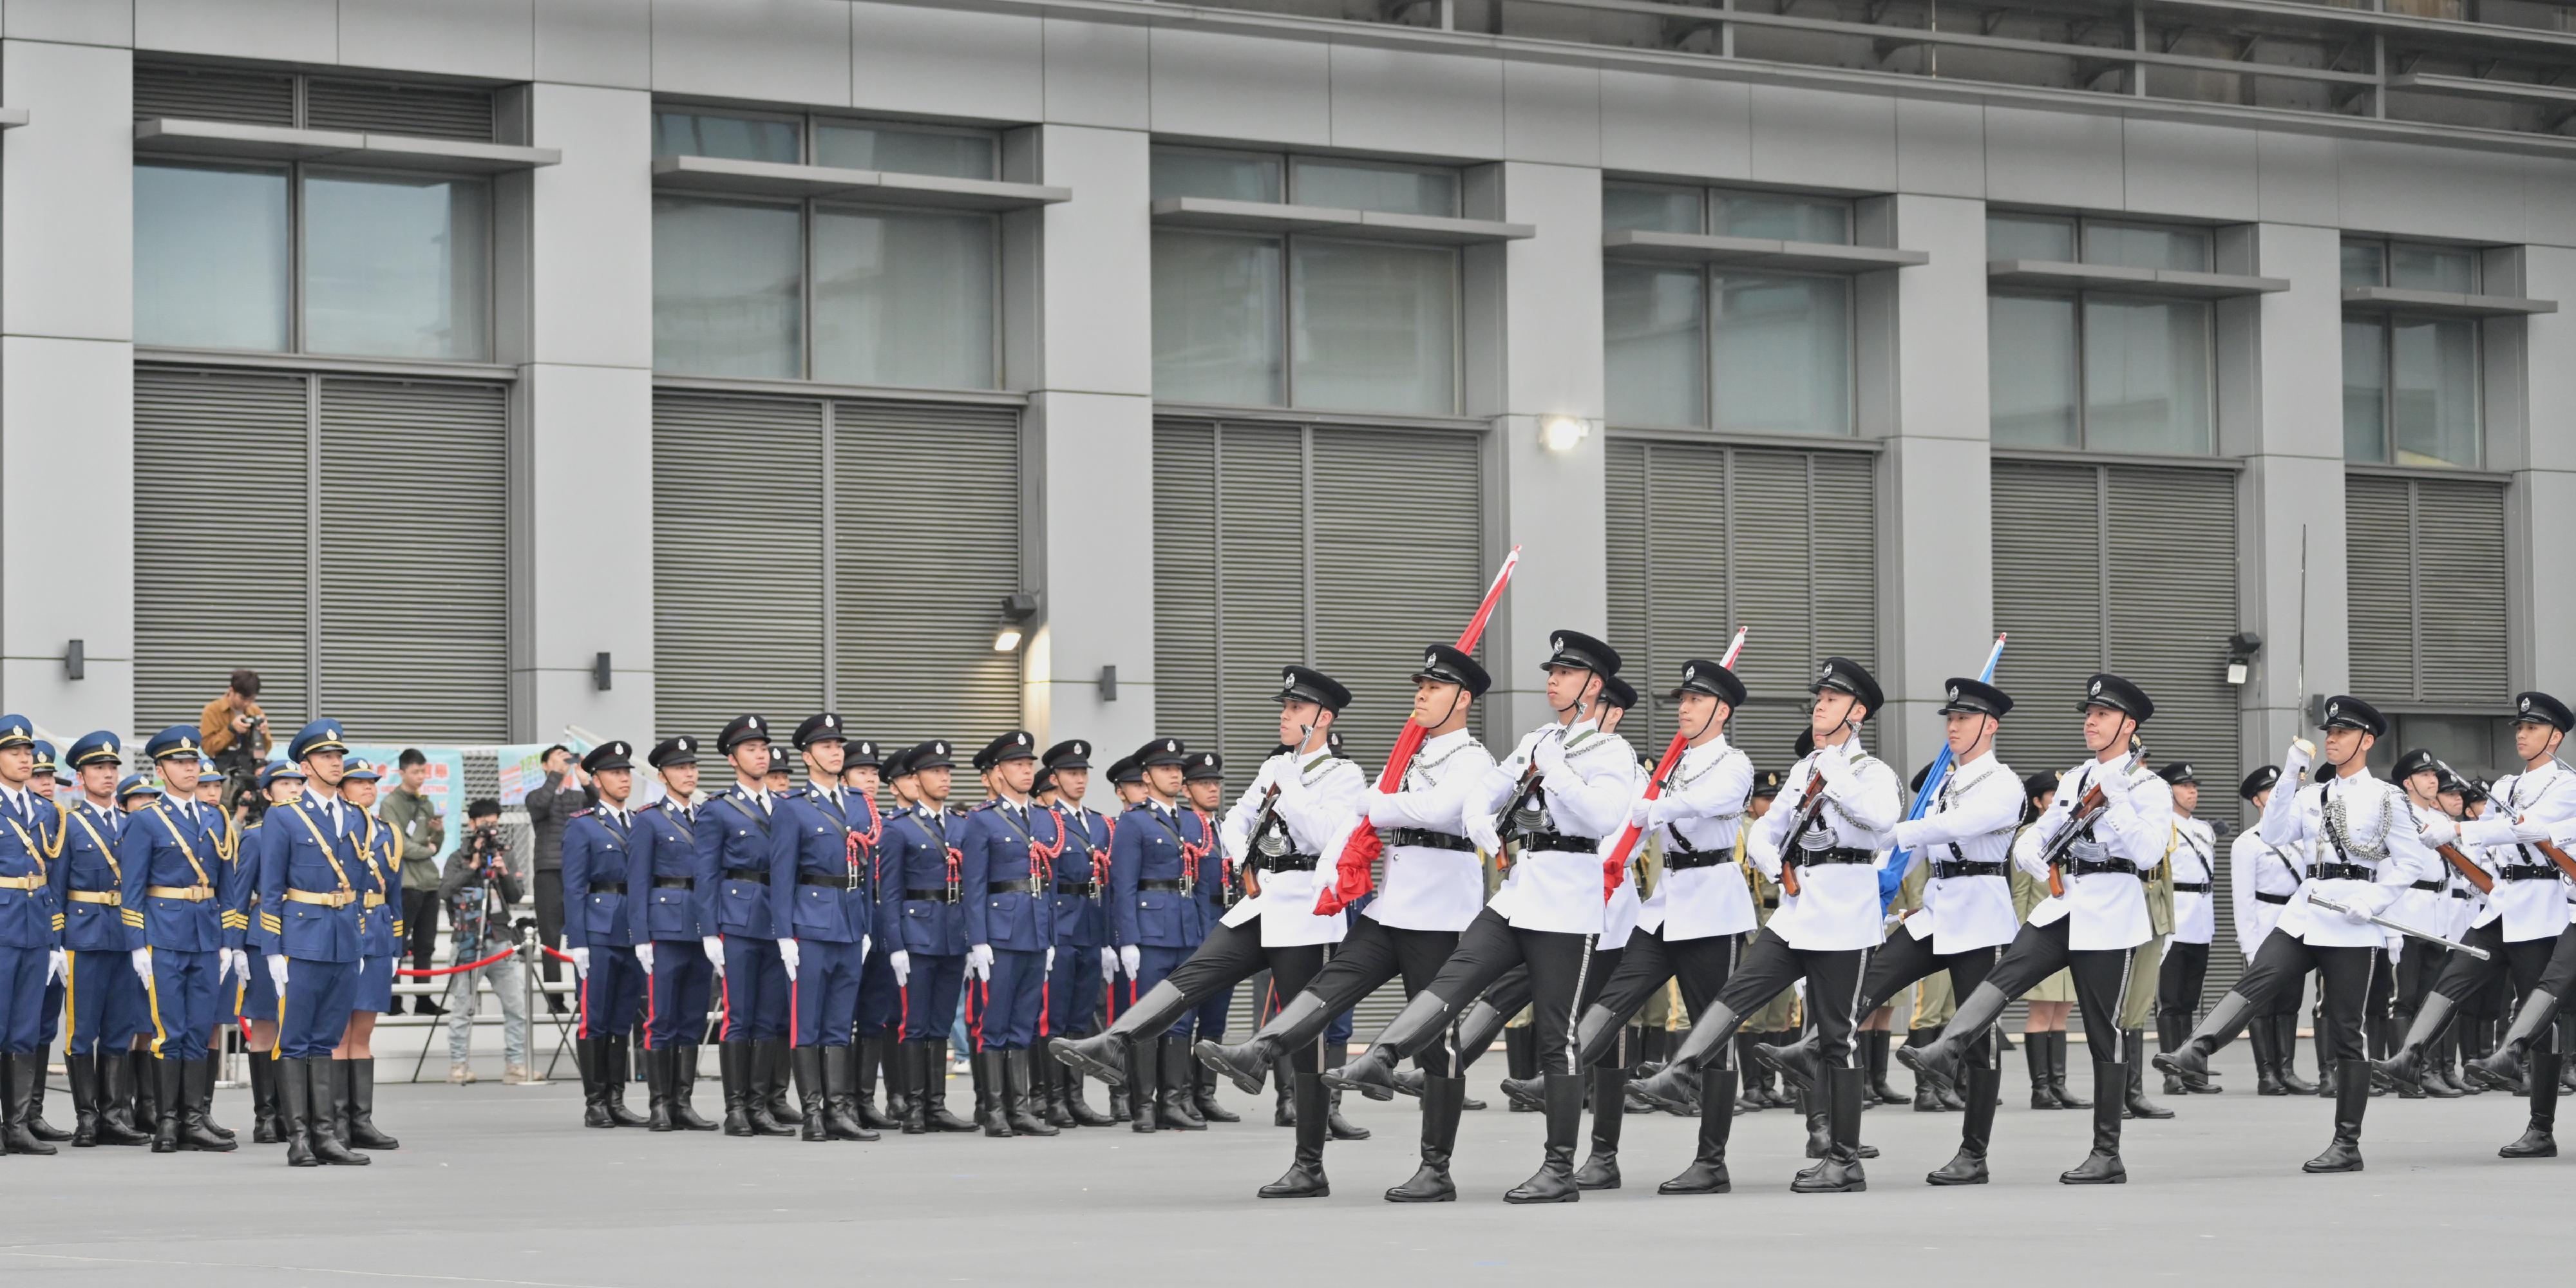 保安局今日（十二月四日）舉行國家憲法日升旗儀式。圖示紀律部隊儀仗隊、護旗方隊以中式步操進場進行升旗儀式。